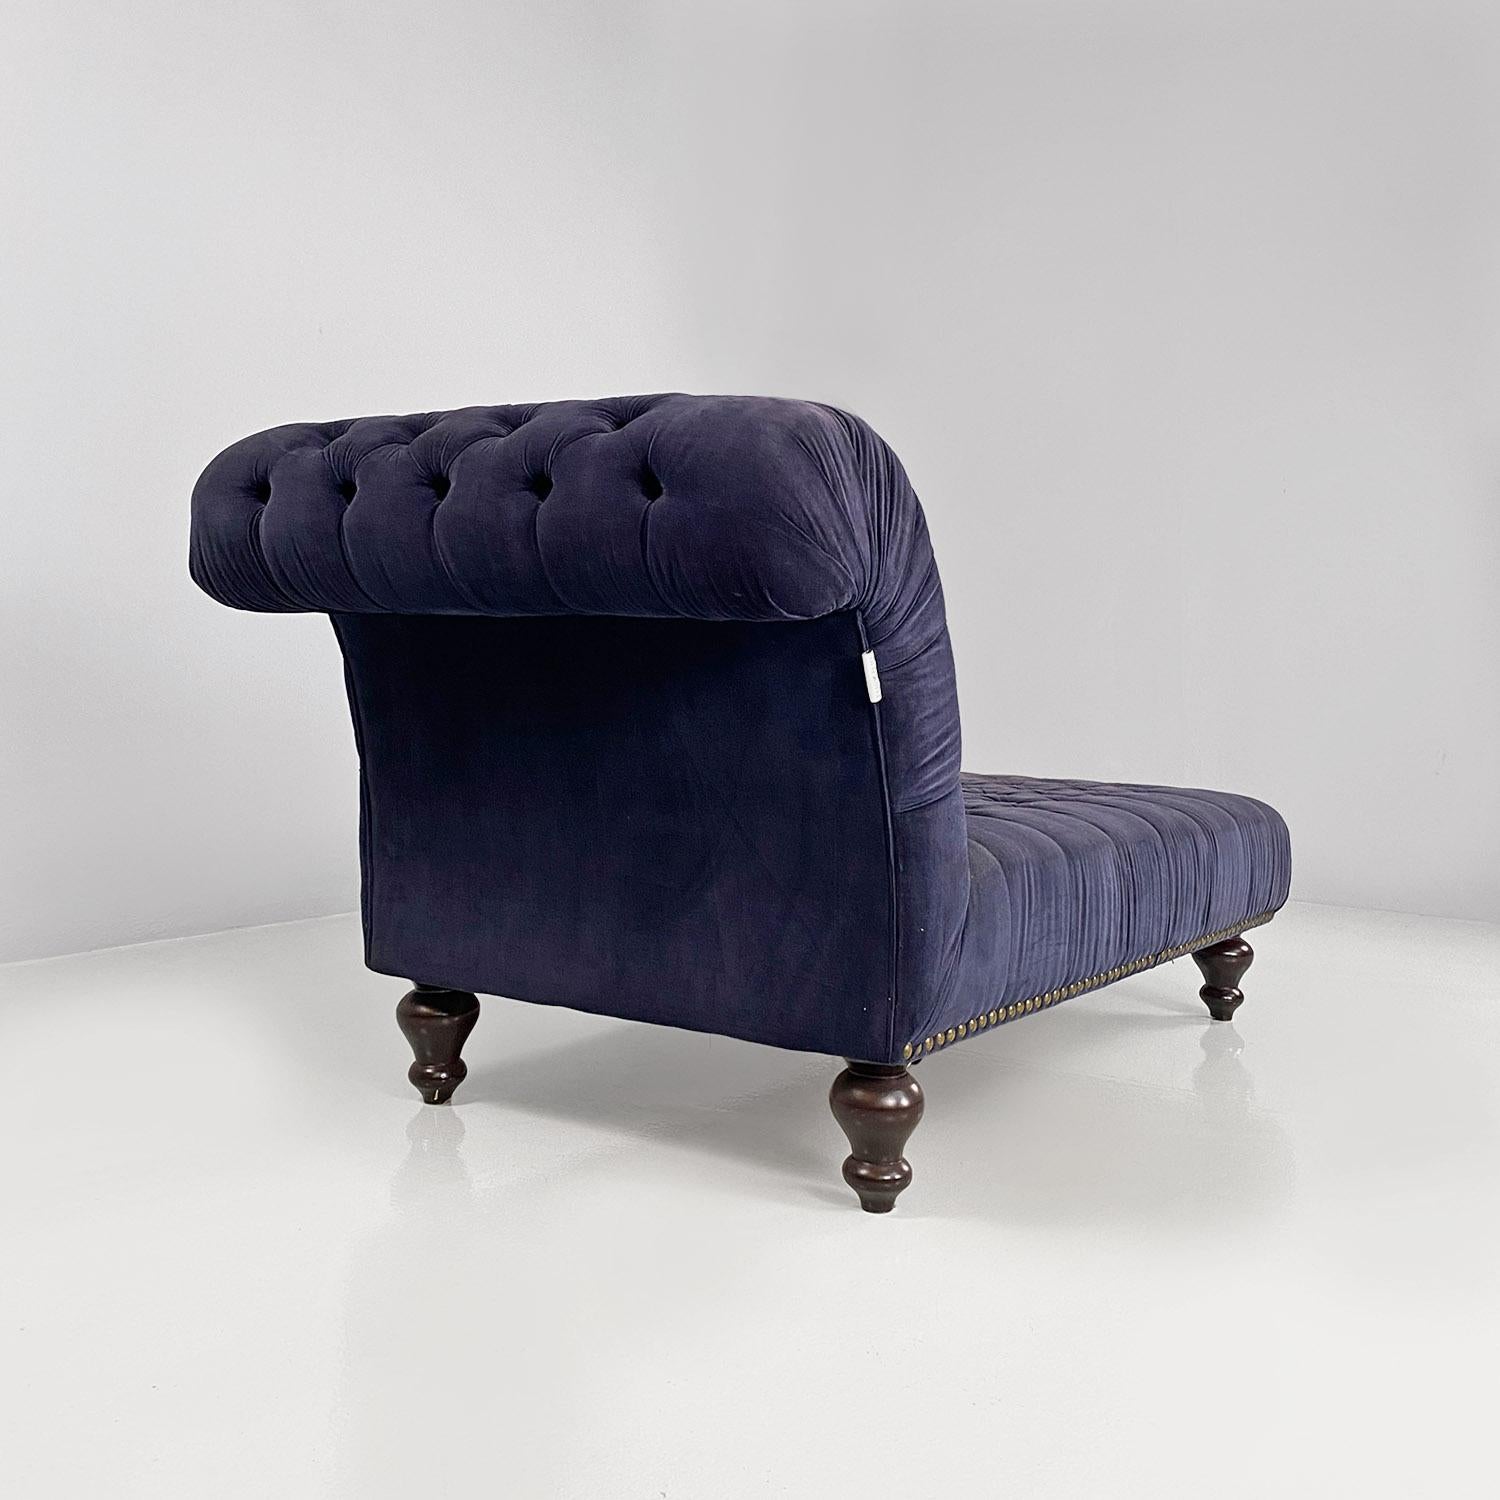 Fin du 20e siècle dormeuse ou chaise longue italienne de style ancien en velours bleu et bois, années 1980 en vente